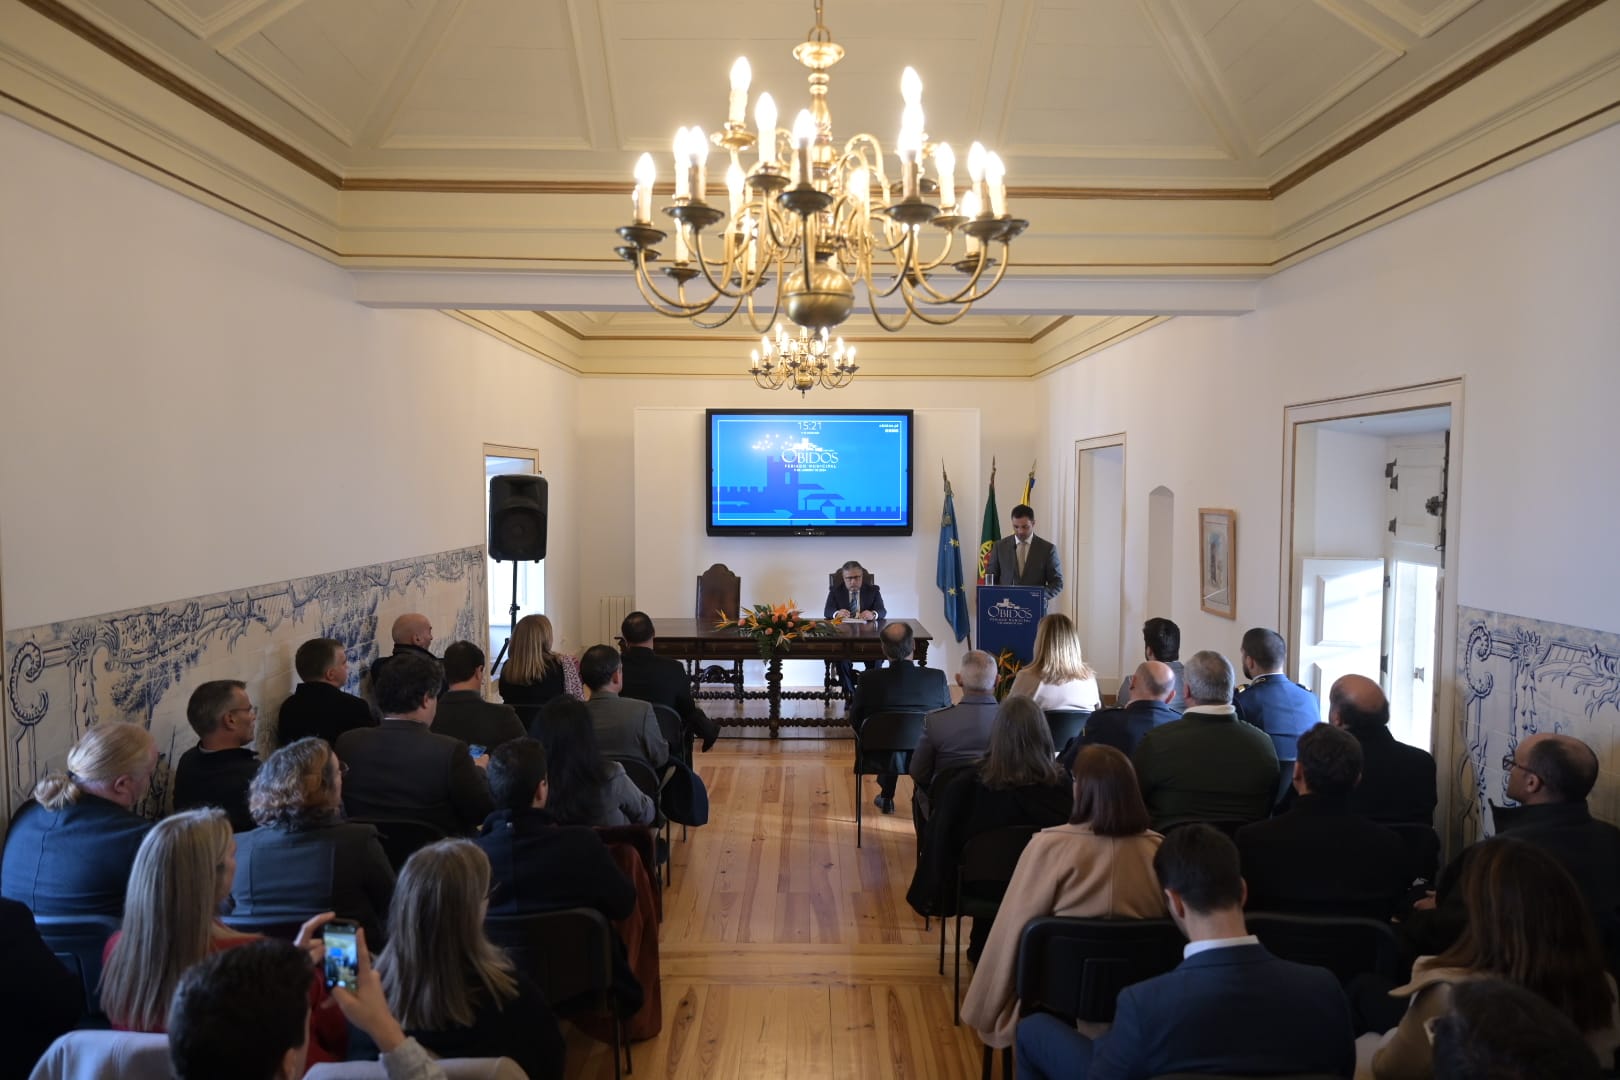 Discurso do presidente da Câmara Municipal de Óbidos - Filipe Daniel